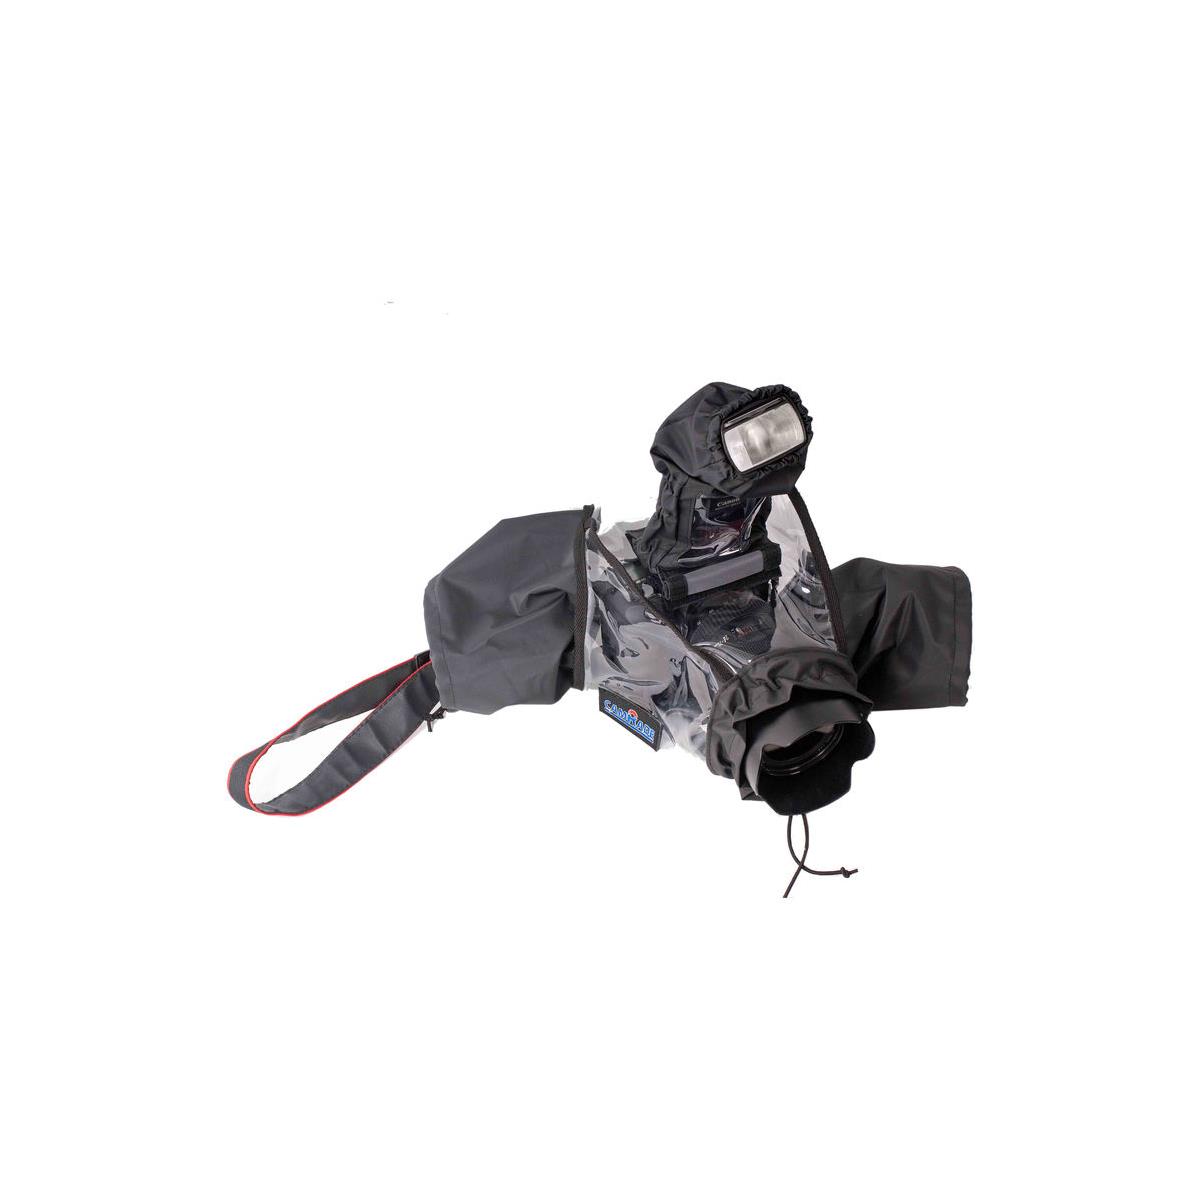 camRade WS-DSLR Wetsuit for D-SLR Cameras, 5D MARK II #CAM-WS-DSLR